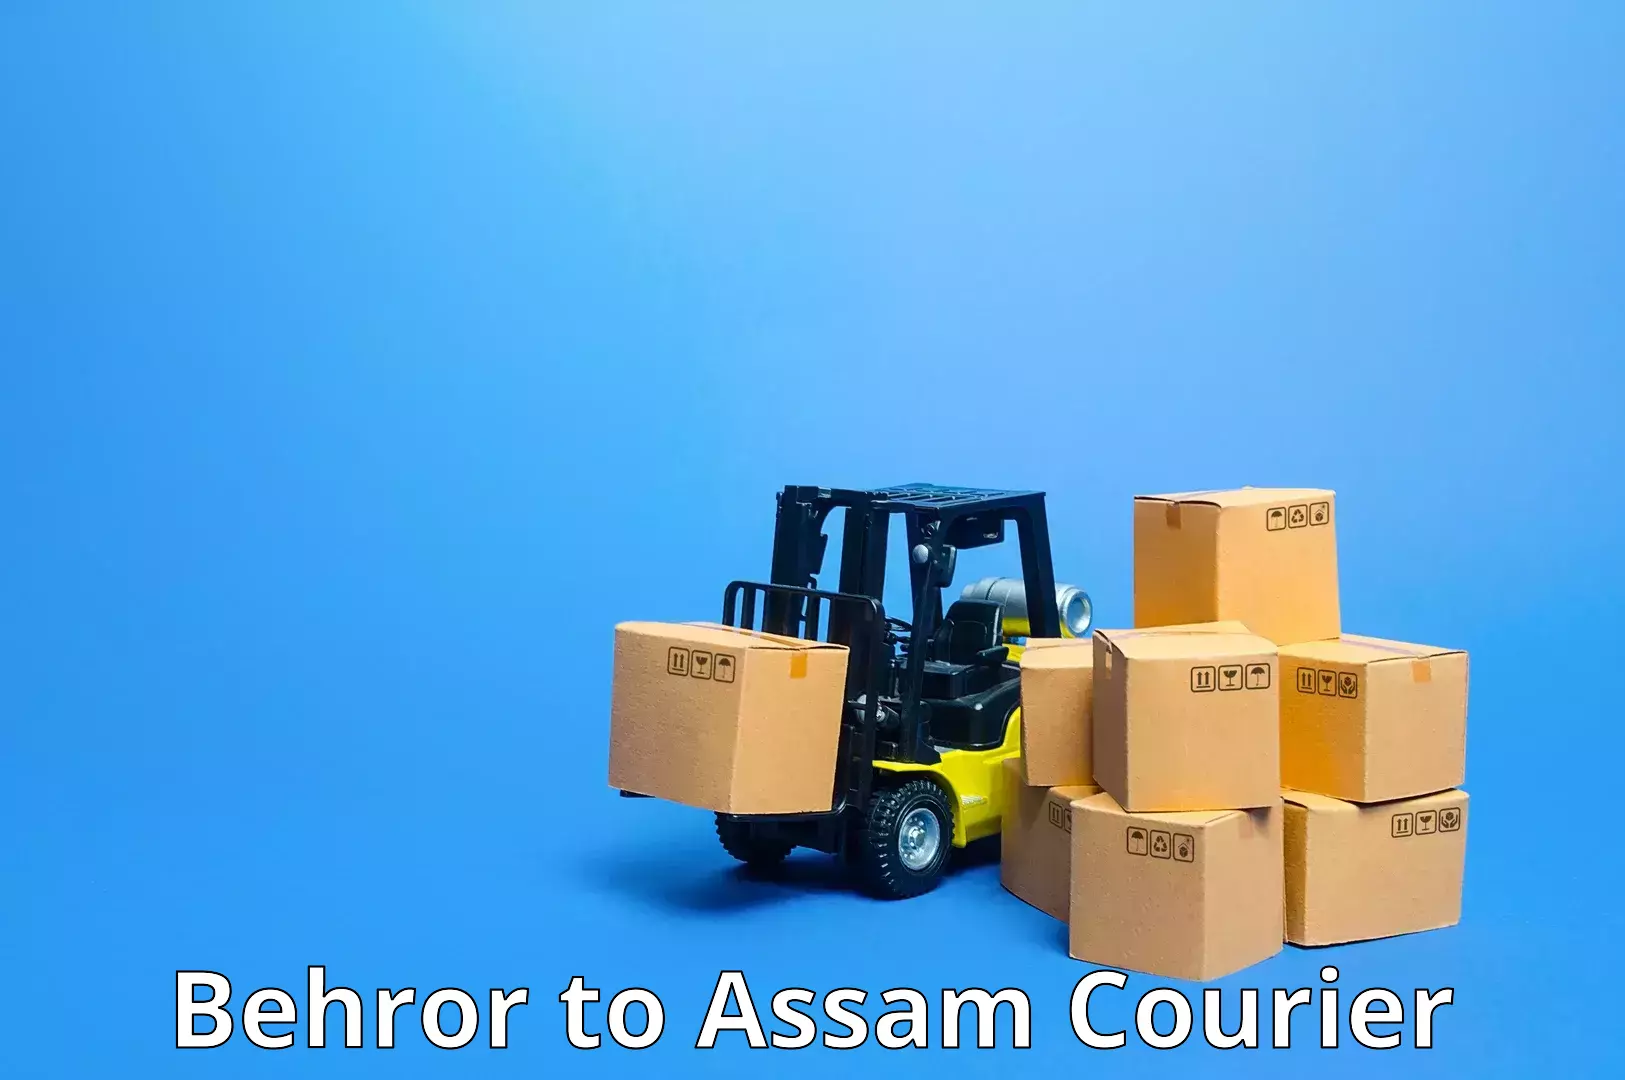 Heavy parcel delivery Behror to Baihata